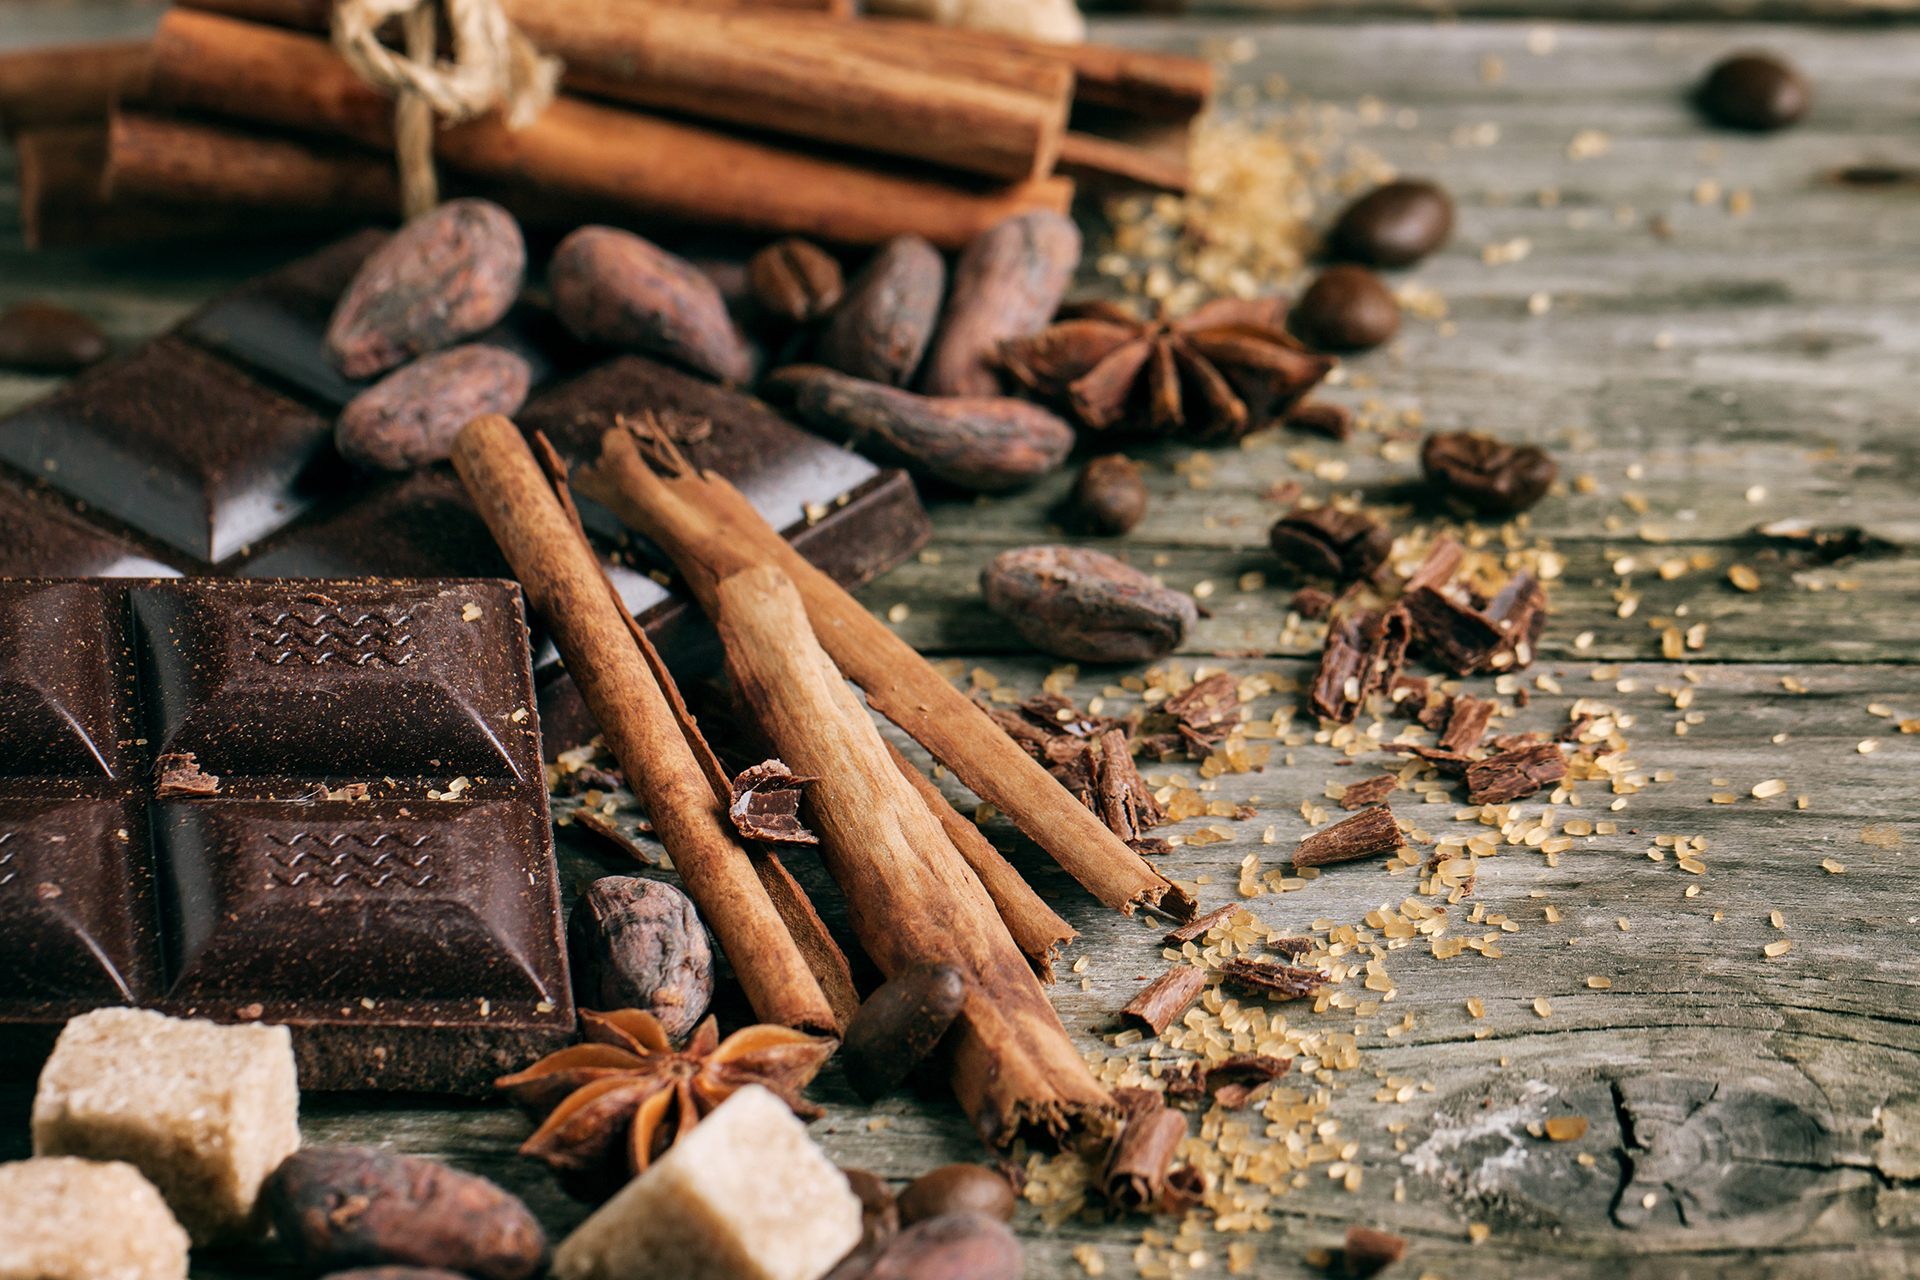 Molti dolci possono contenere il Nichel come cacao, cioccolato e cannella